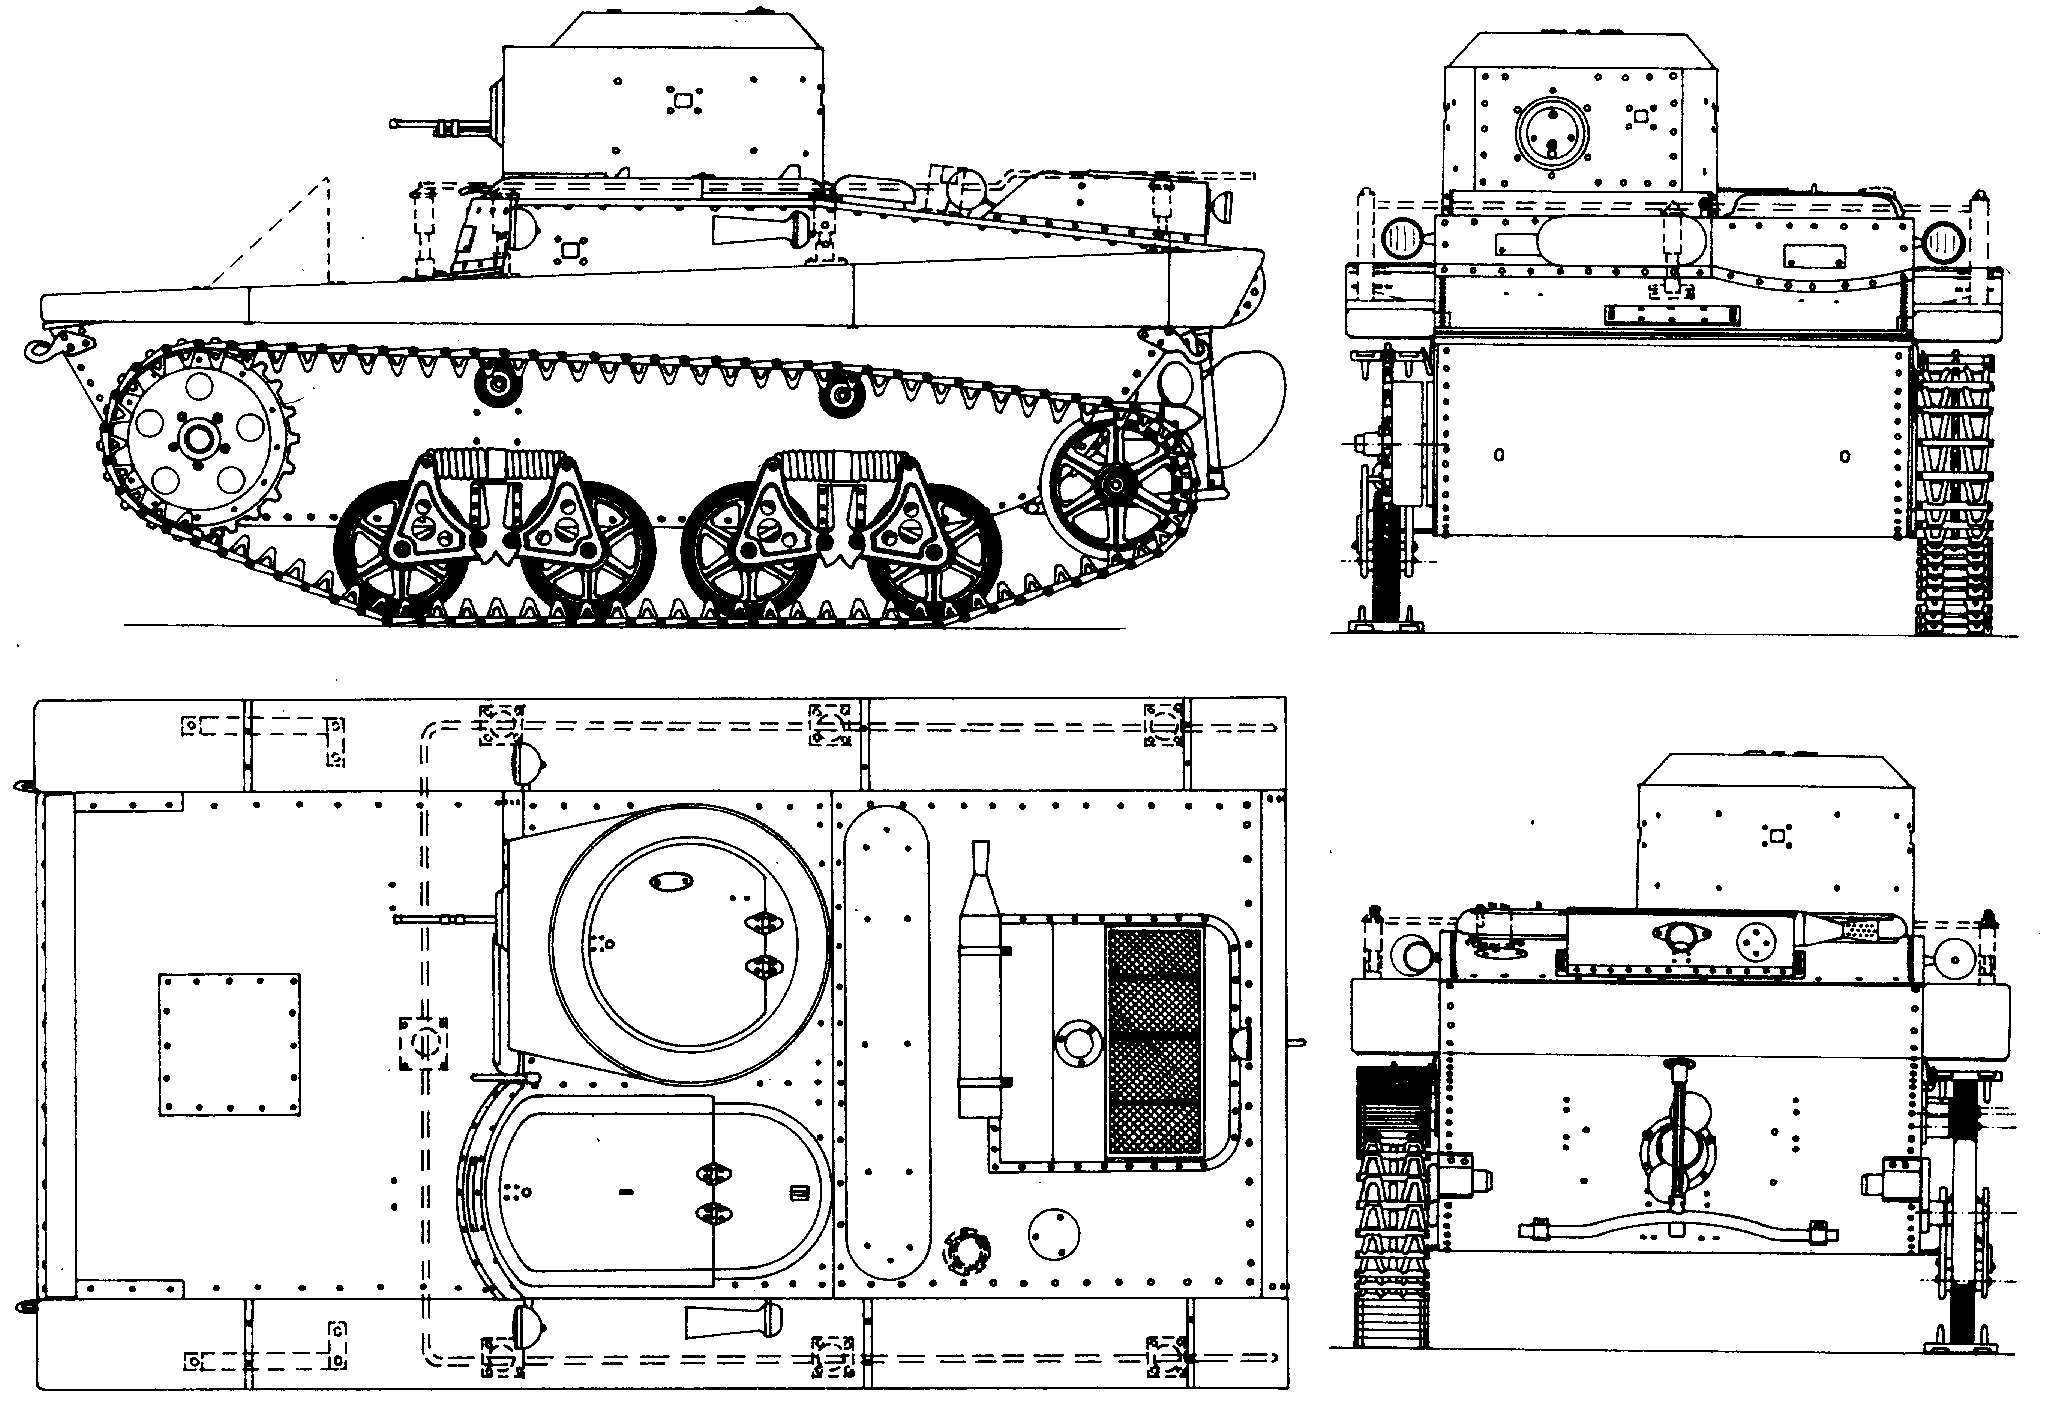 T-37A tank blueprint